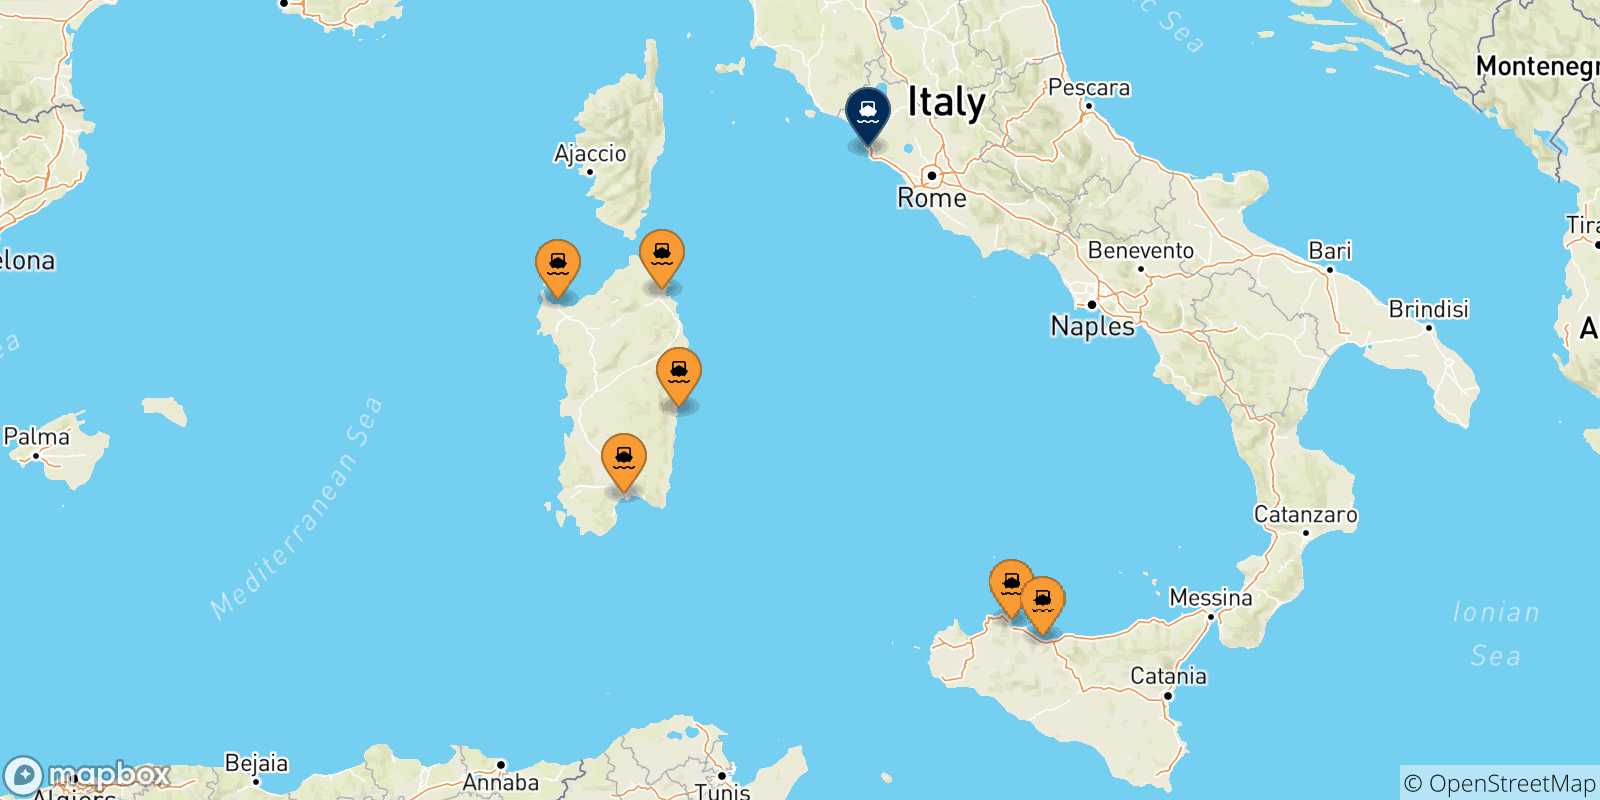 Mappa delle possibili rotte tra l'Italia e Civitavecchia